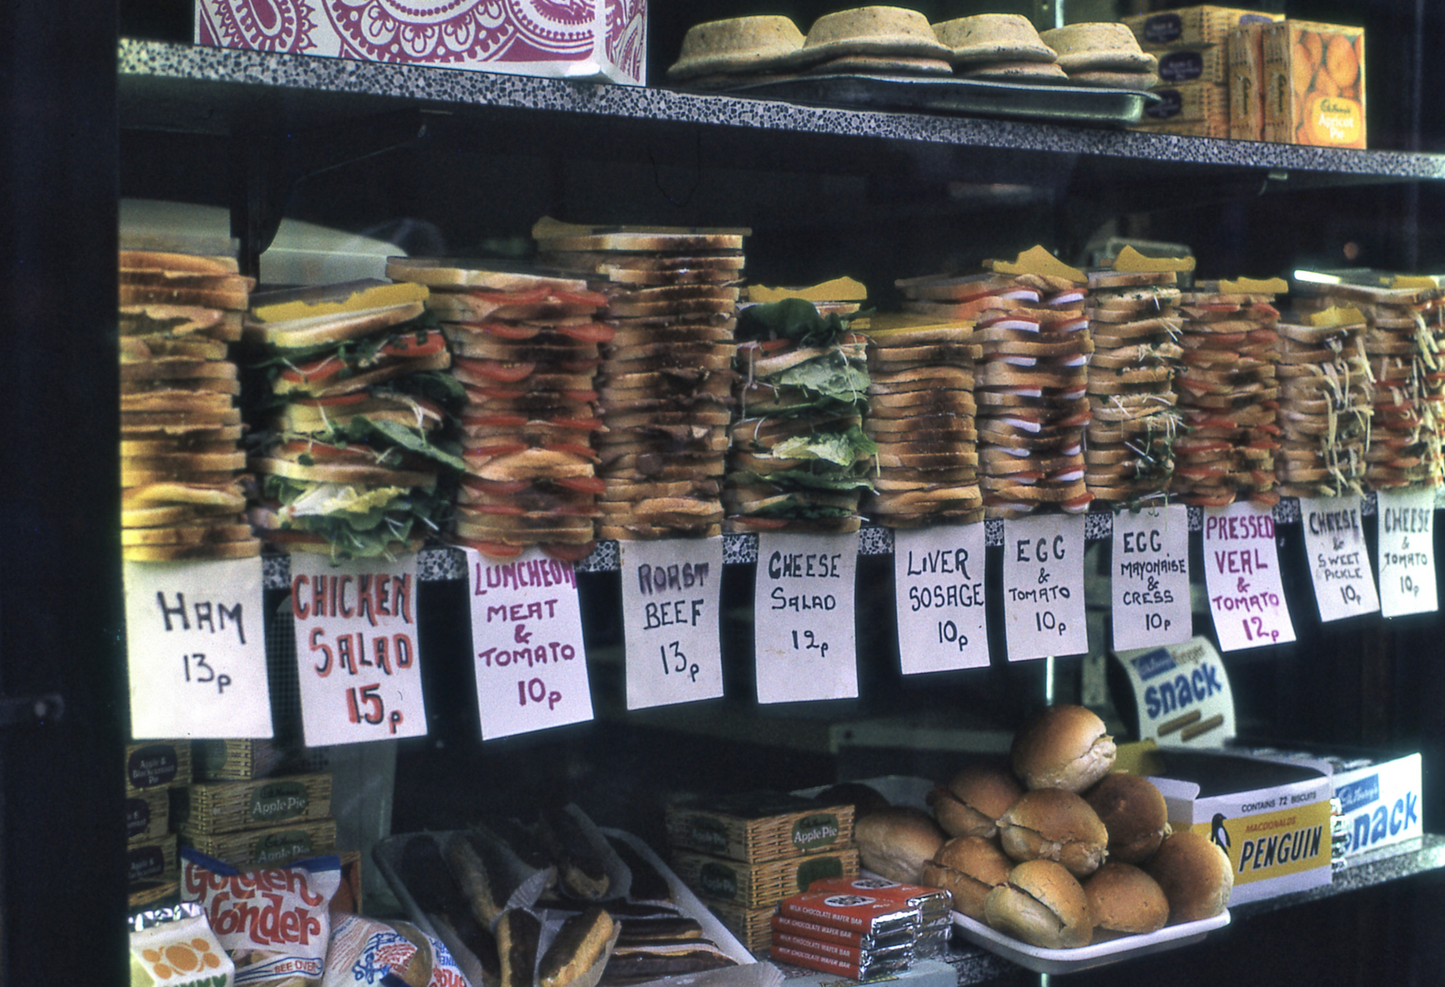 Sandwiches, London, 1972 - Postcard